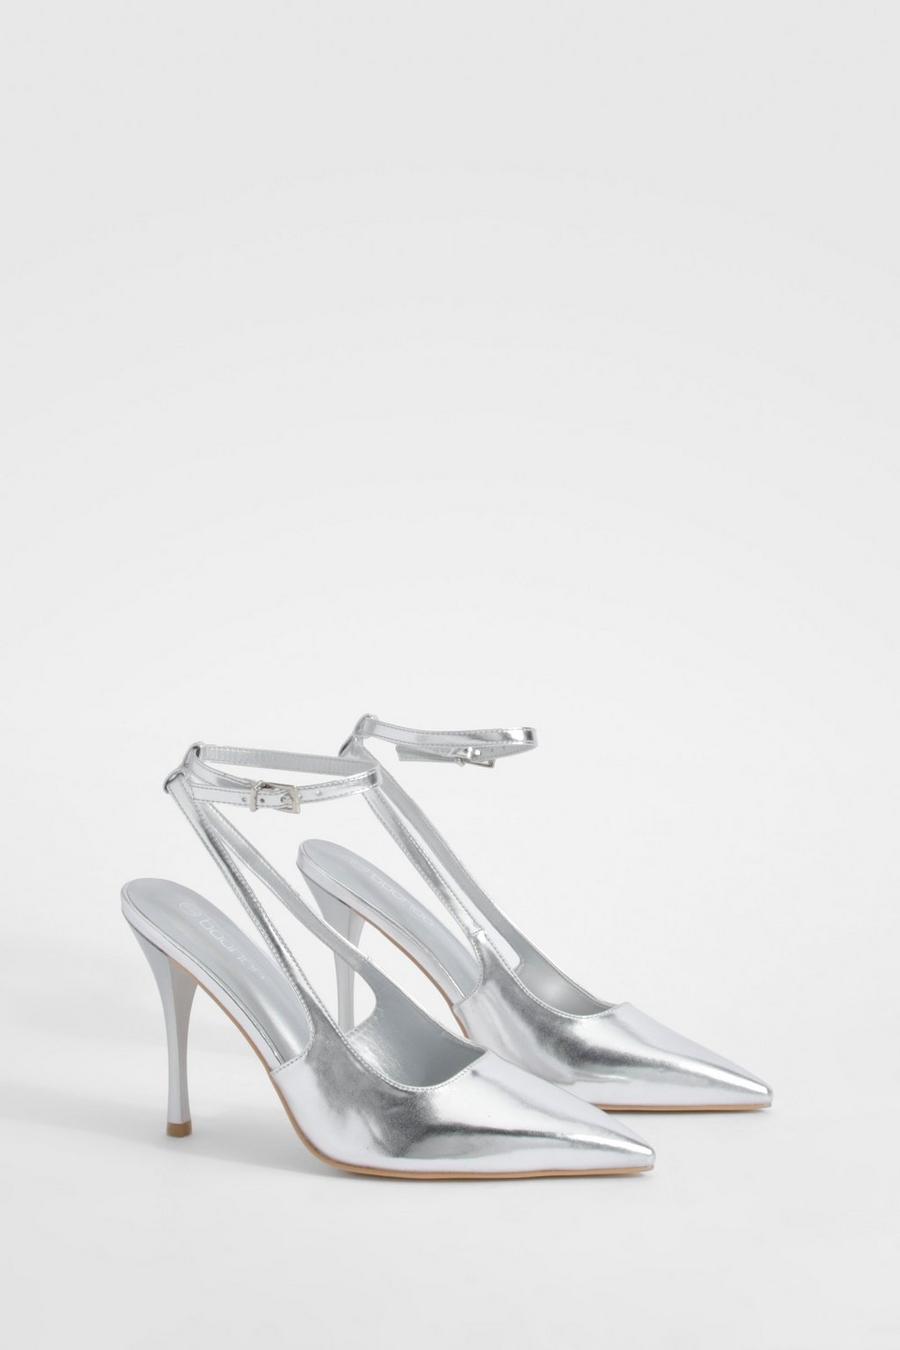 Zapatos de salón metálicos con abertura y cordones cruzados, Silver